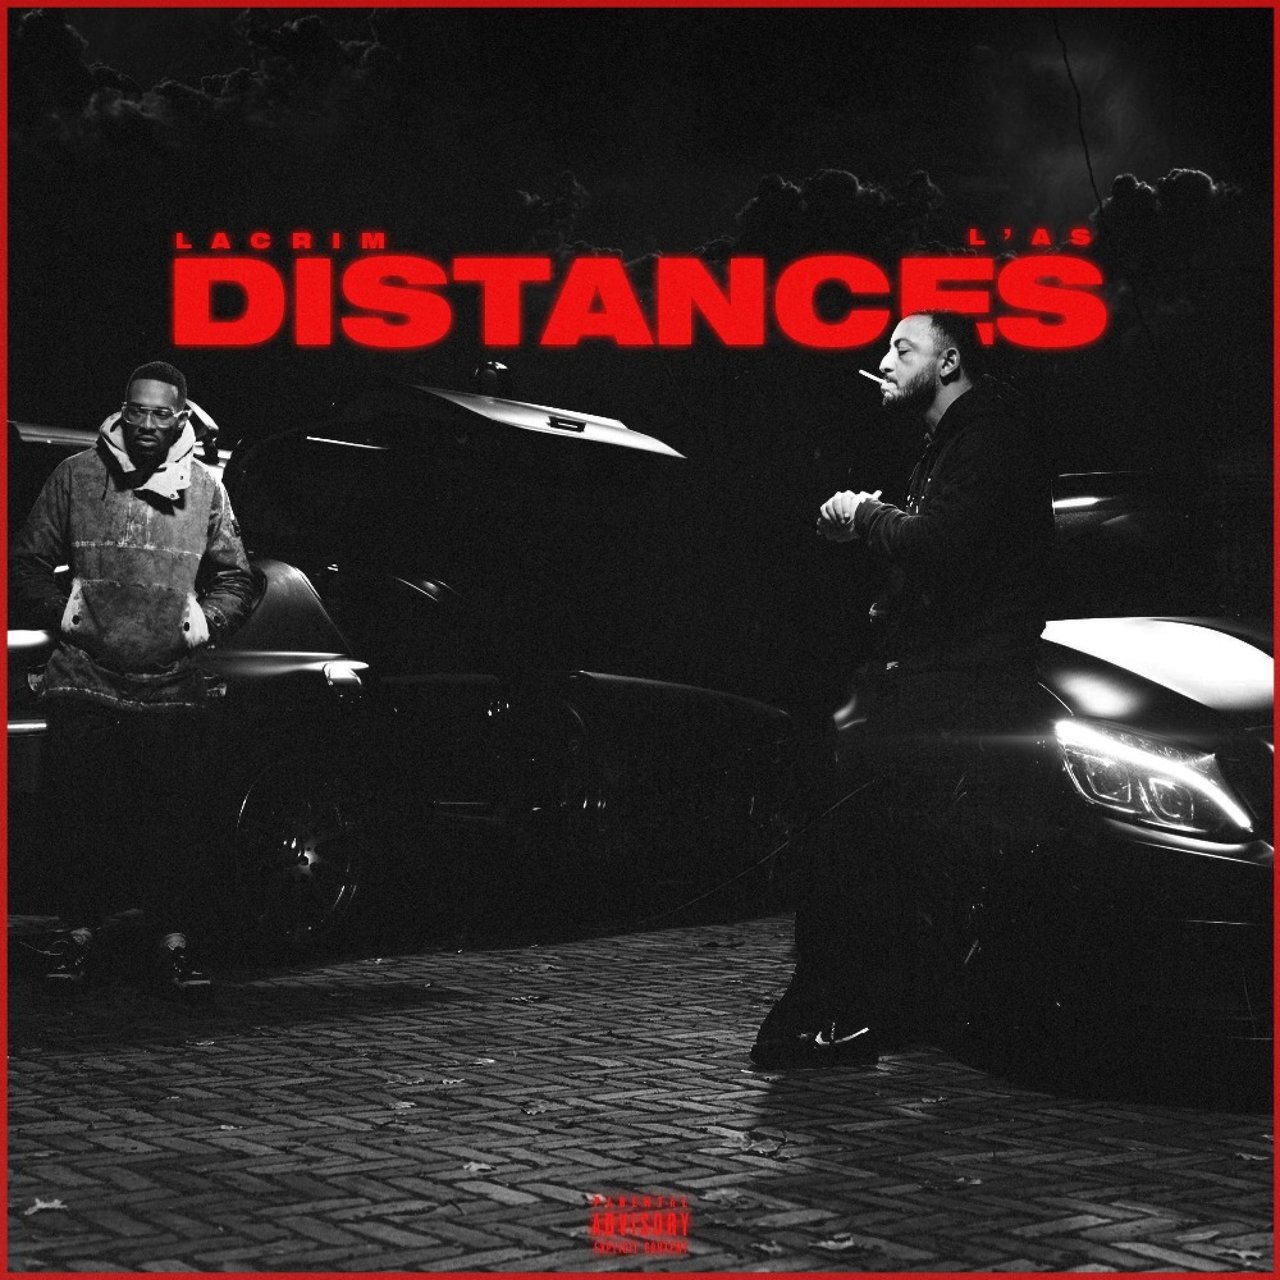 L'as - Distances (ft. Lacrim) (Cover)